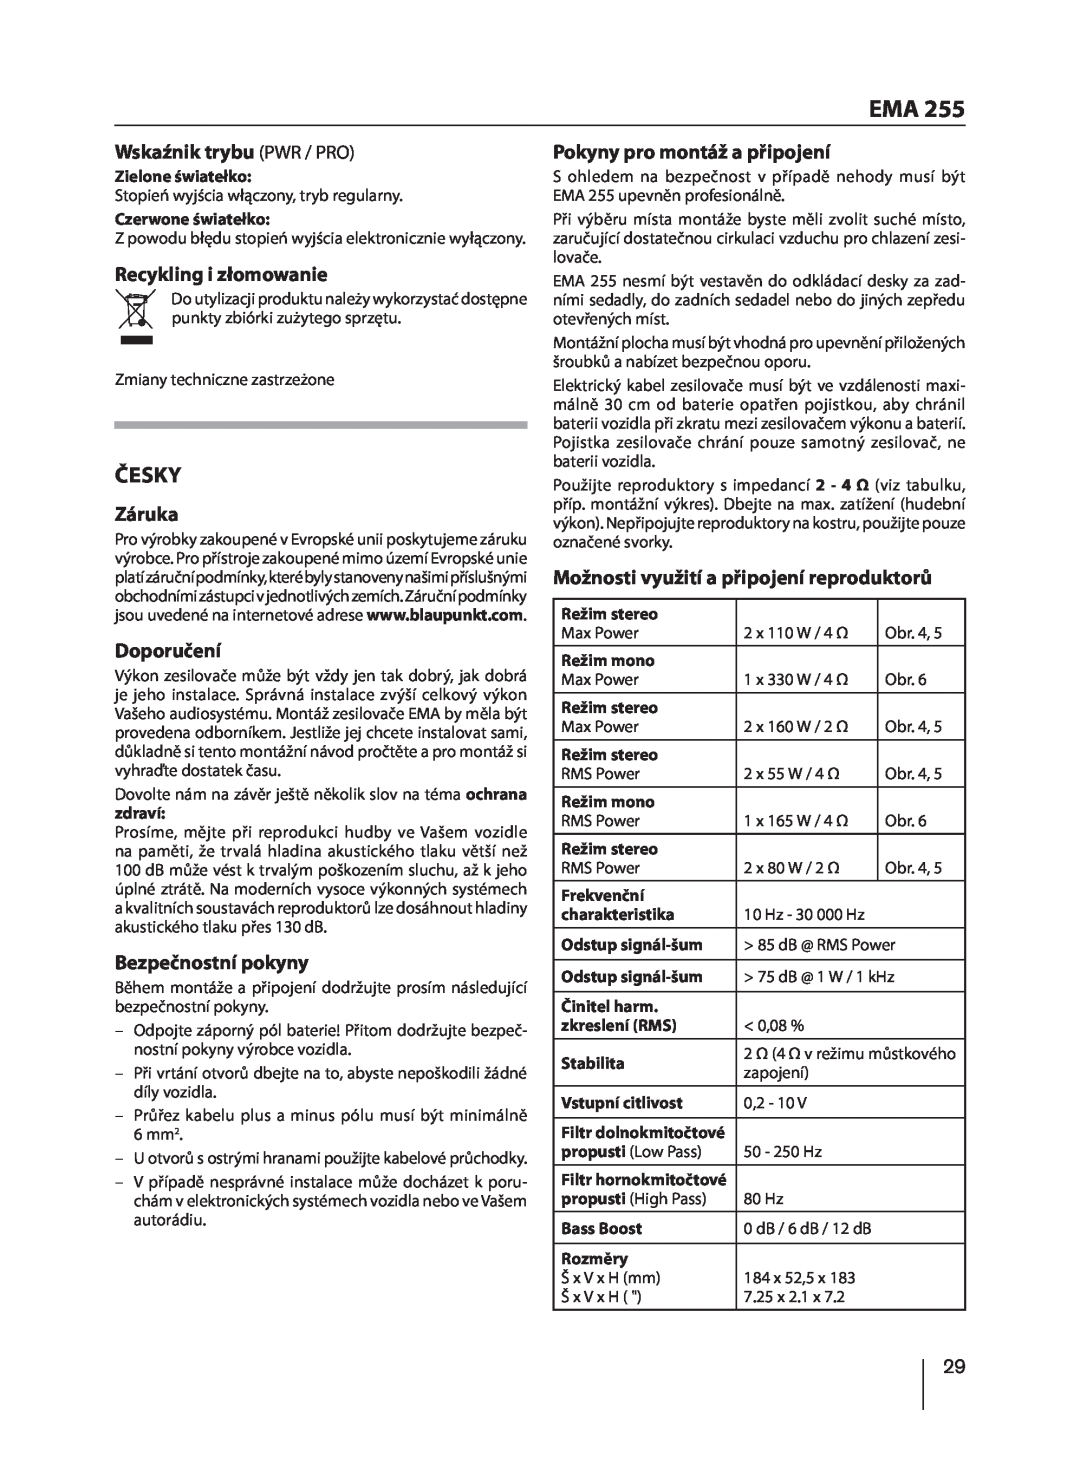 Blaupunkt EMA 255 manual Česky, Wskaźnik trybu PWR / PRO, Recykling i złomowanie, Záruka, Doporučení, Bezpečnostní pokyny 